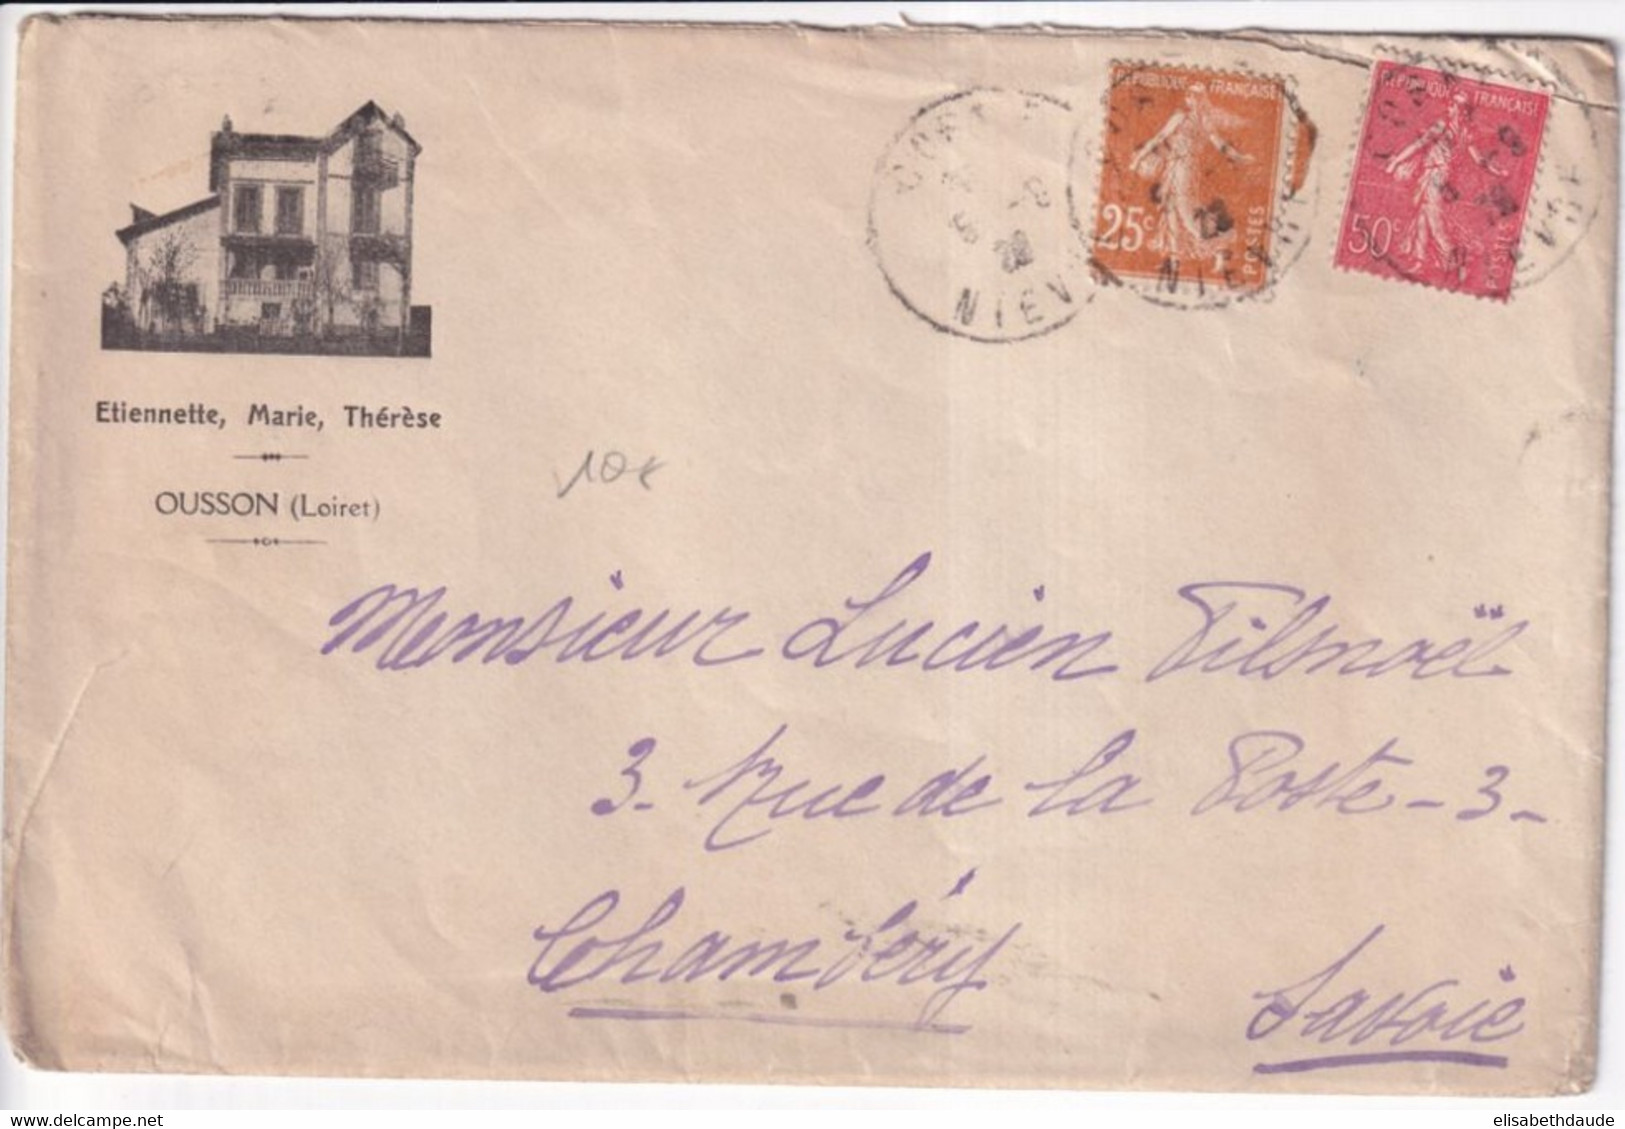 1928 - SEMEUSE / ENVELOPPE PRIVEE ILLUSTREE "ETIENNETTE MARIE ET THERESE" à OUSSON (LOIRET) - 1906-38 Semeuse Camée